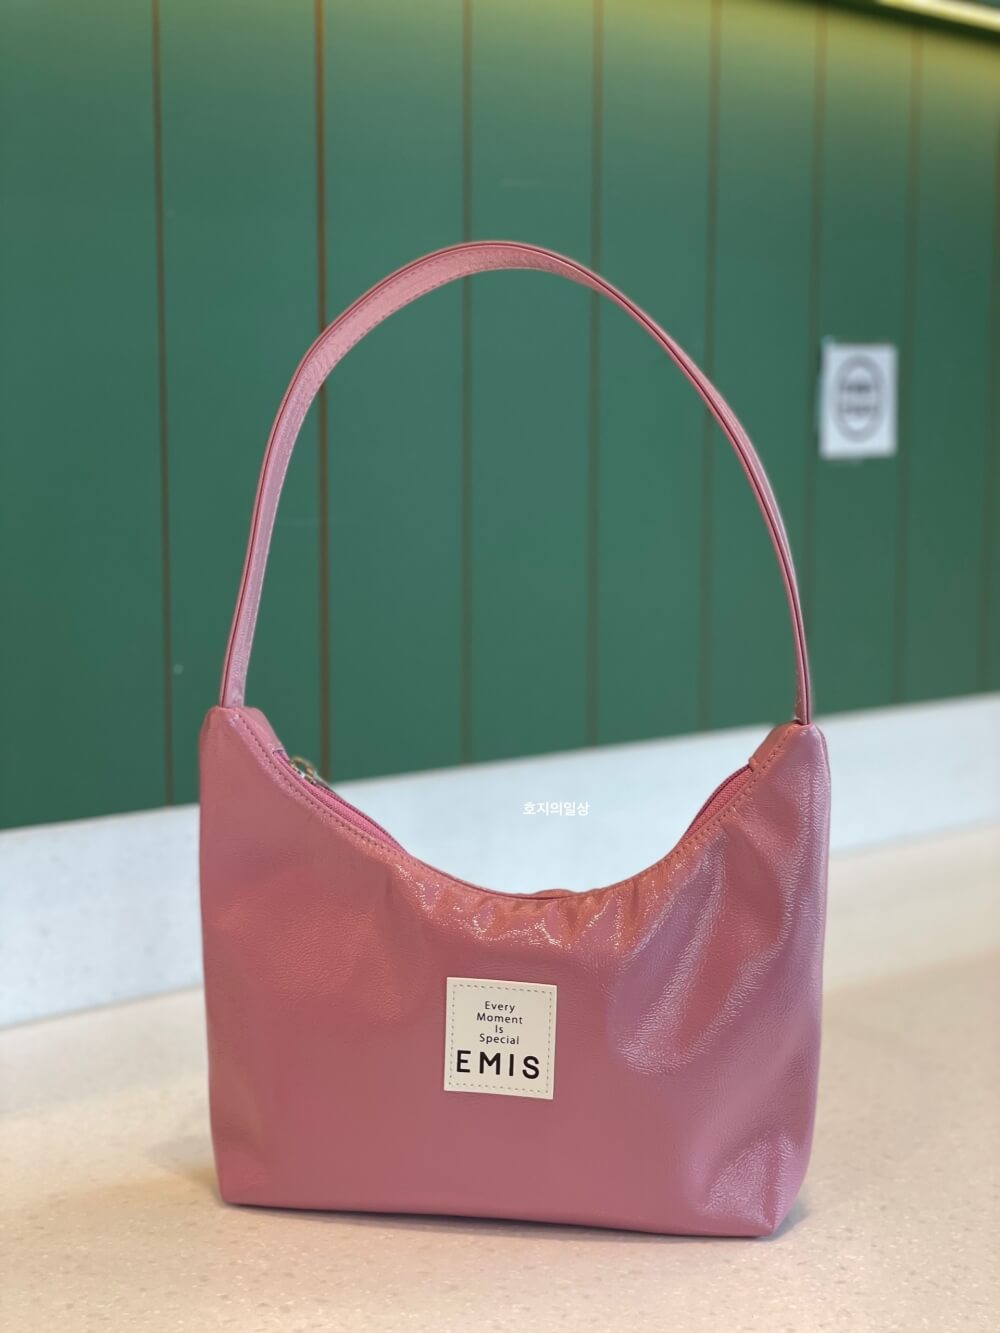 EMIS 이미스 에나멜 호보백 핑크색 - 상품 스탠딩 모습